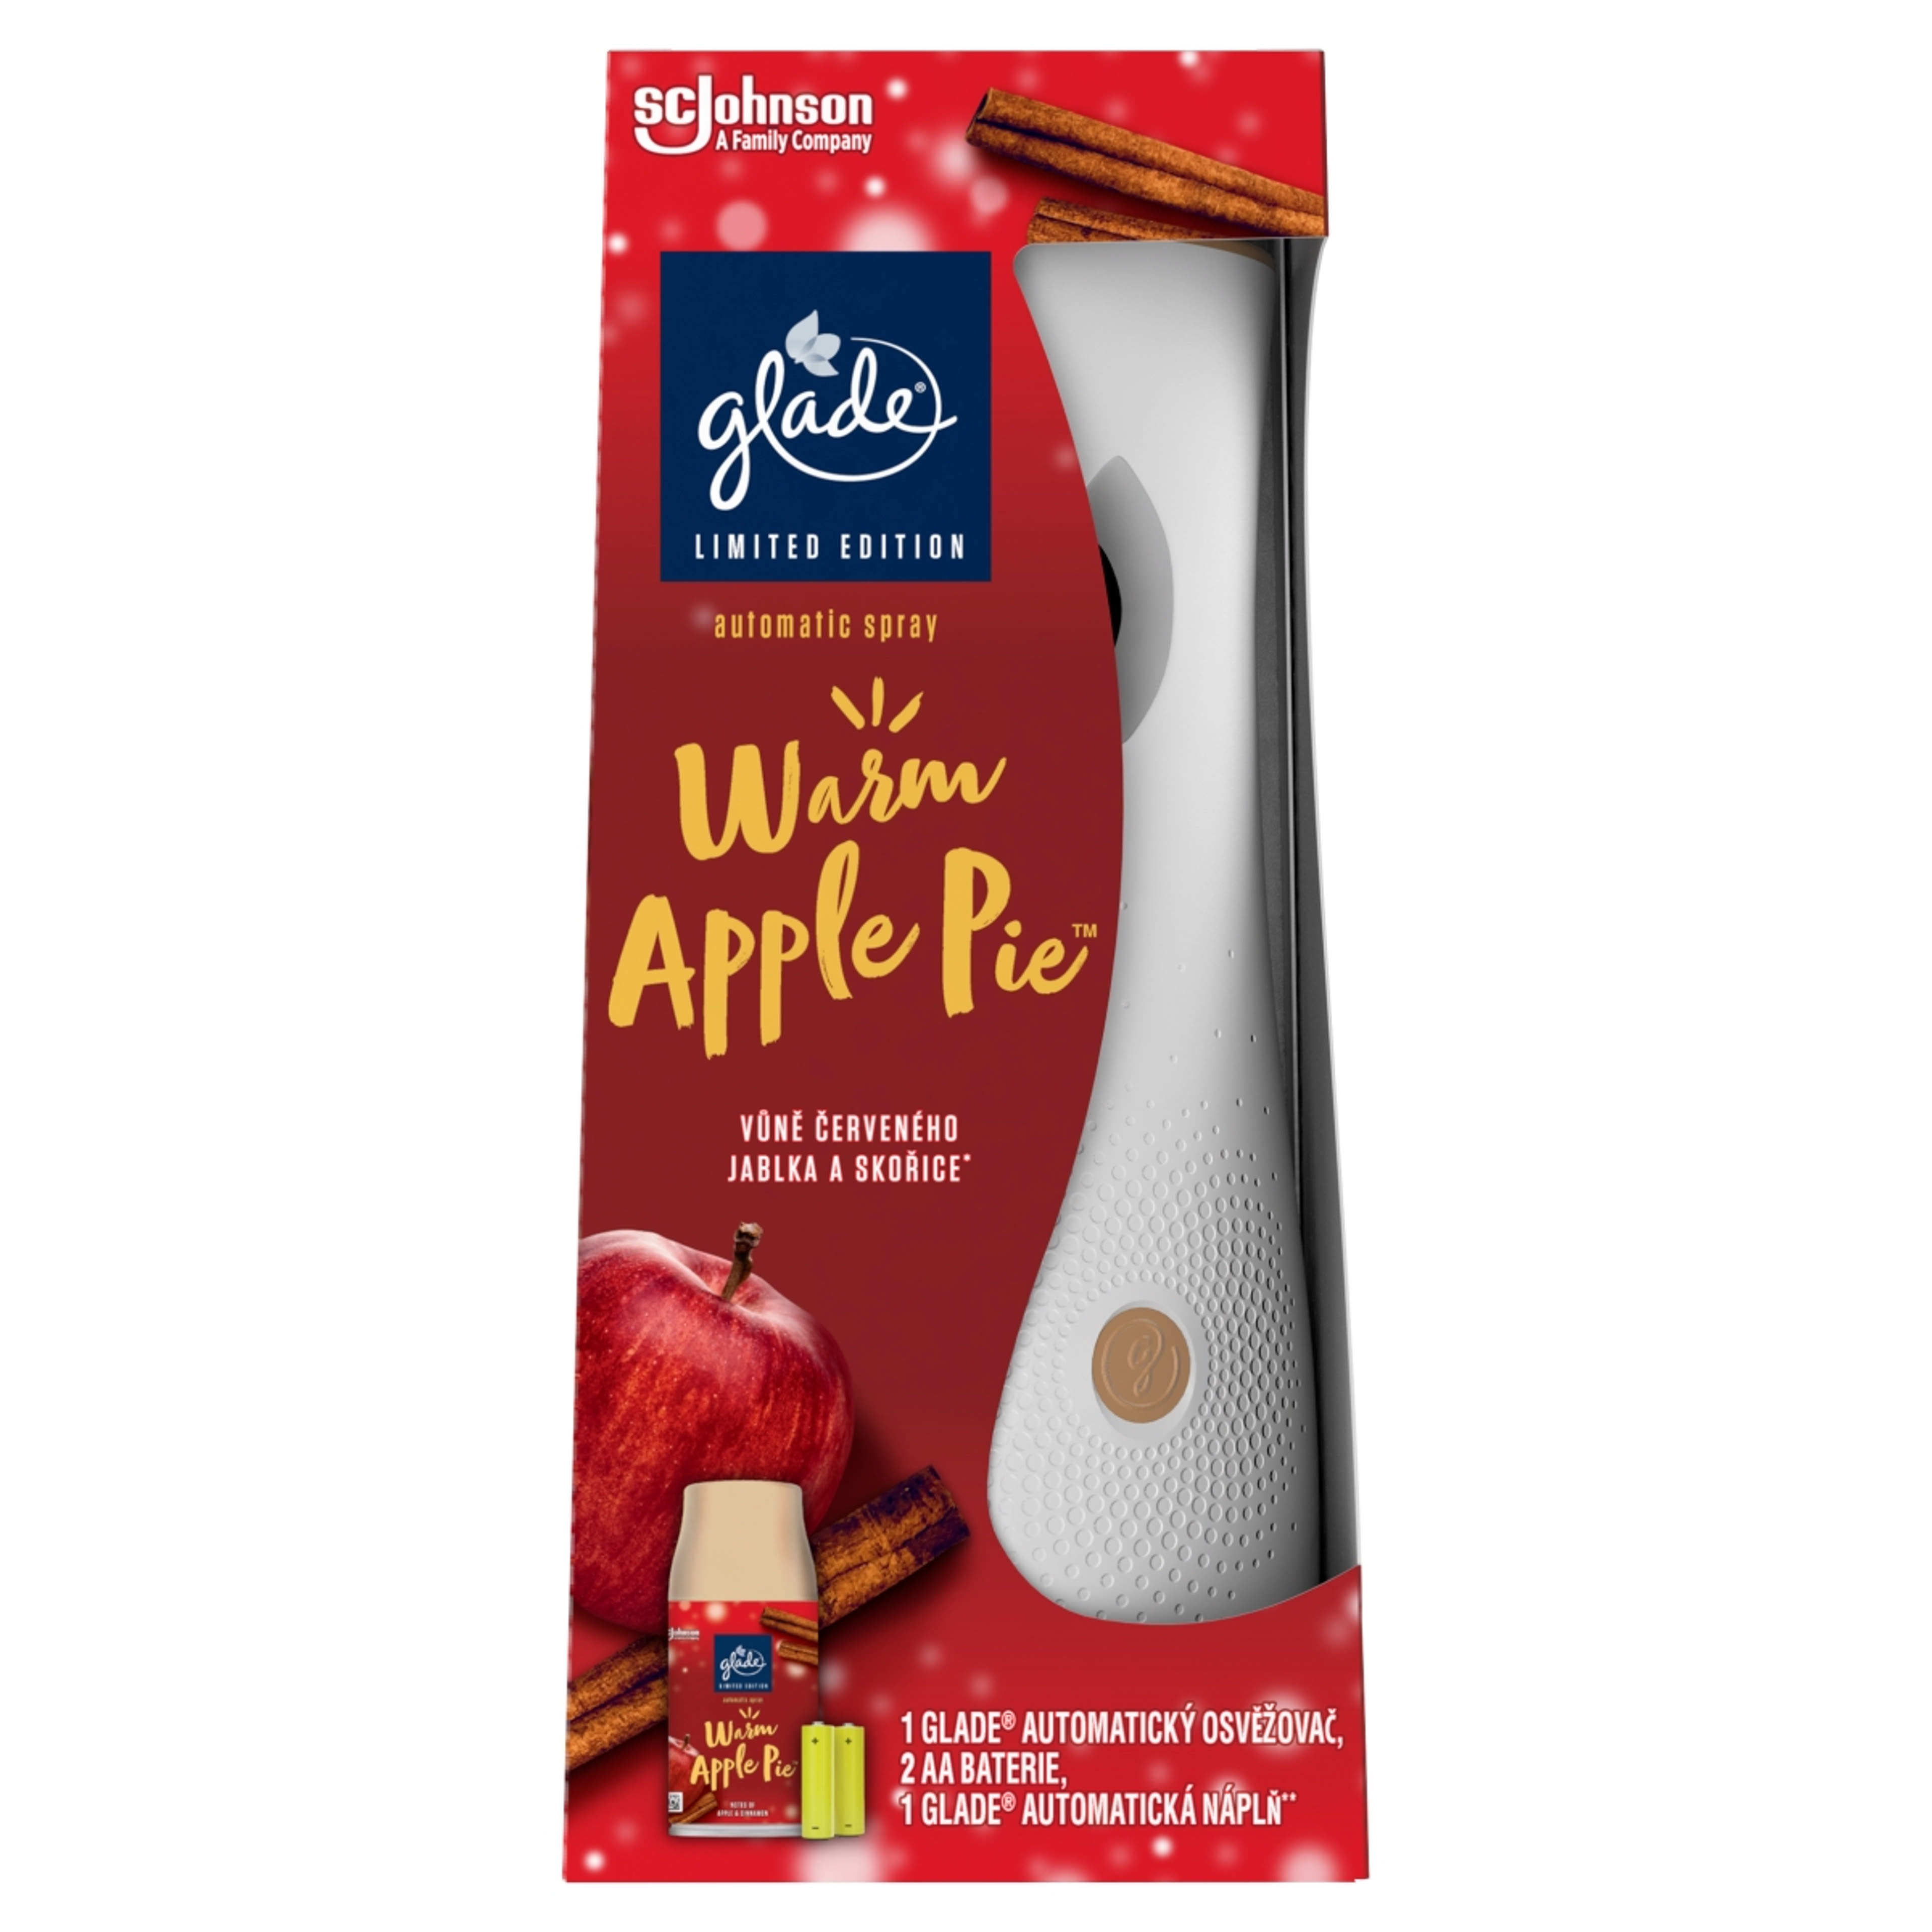 Glade Warm Apple Pie automata légfrissítő készülék - 269 ml